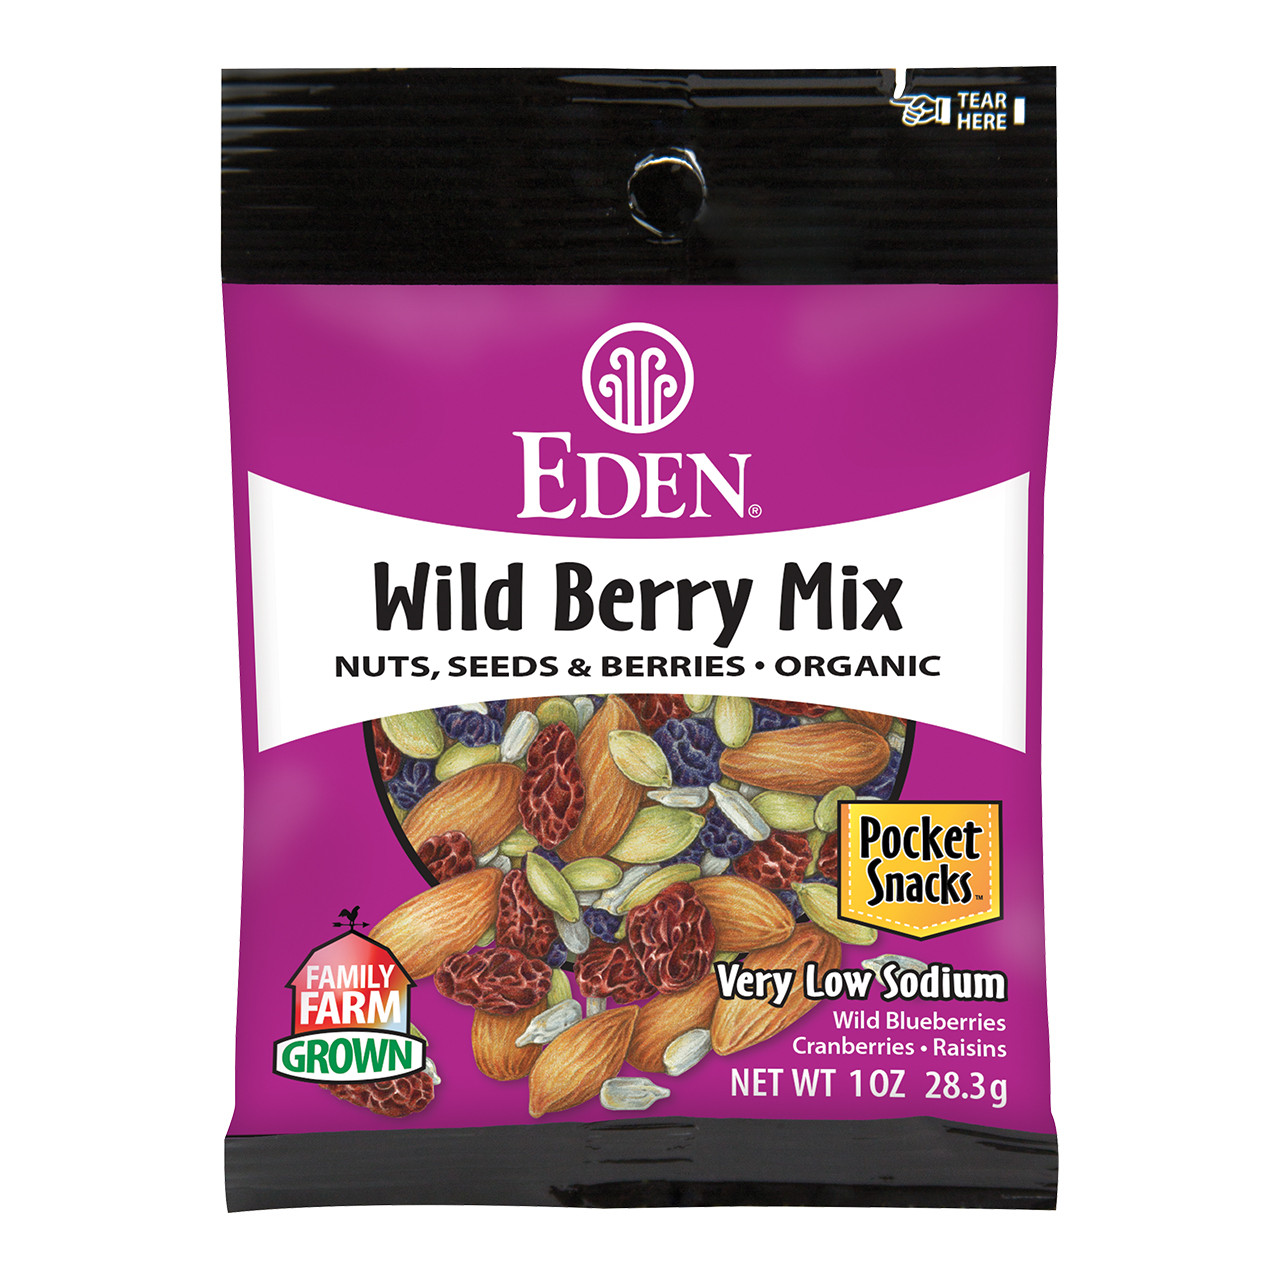 Wild Berry Mix, Organic Pocket Snacks - 1 oz